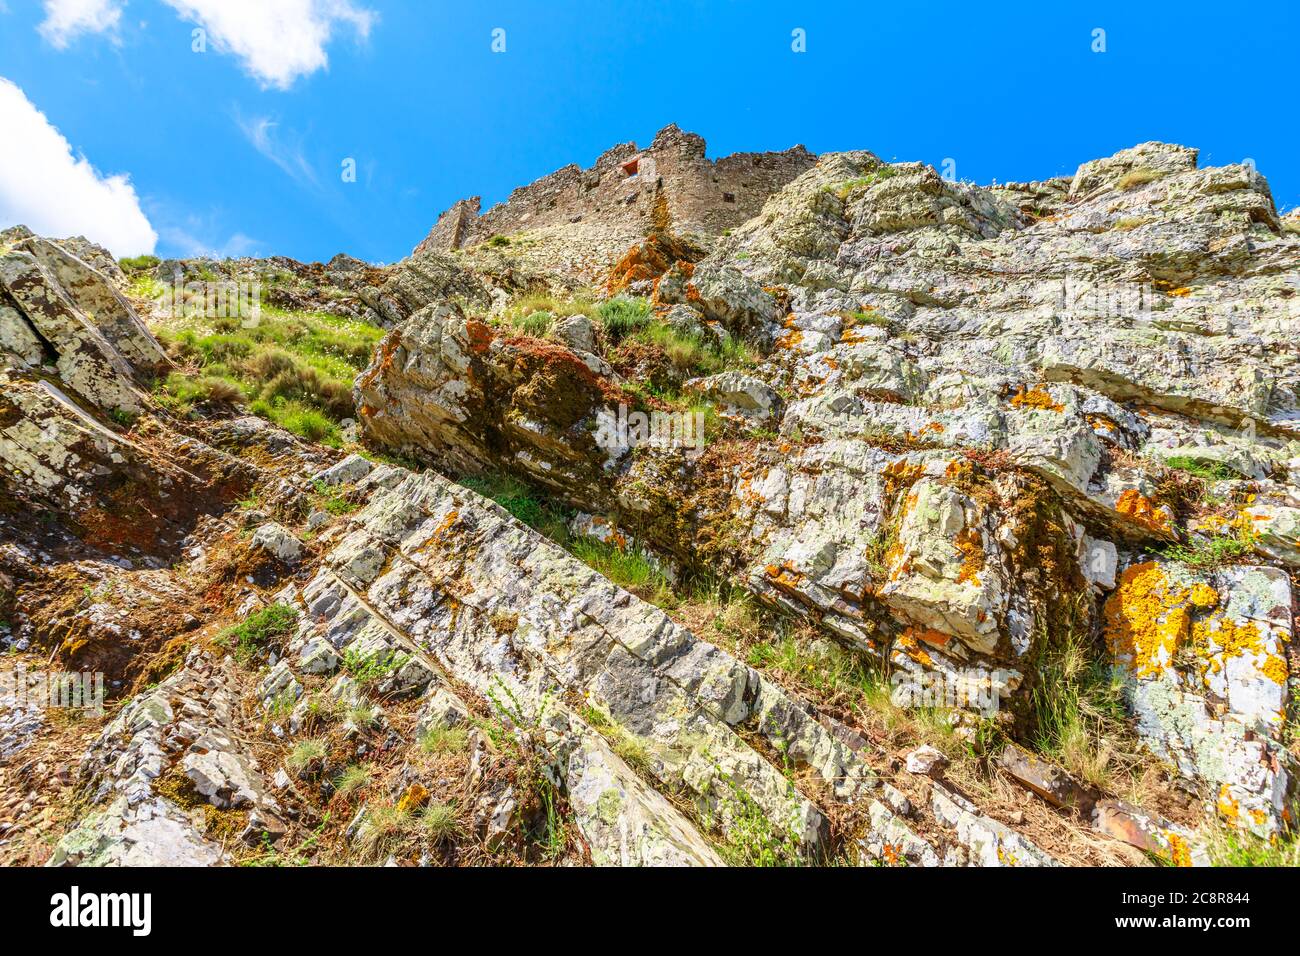 Vista dal lato posteriore del Castello di Volterraio costruito 1284 su roccia a 394 m. Fortezza di Volterraio, simbolo dell'Isola d'Elba. Paesaggio delle montagne dell'Elba Foto Stock